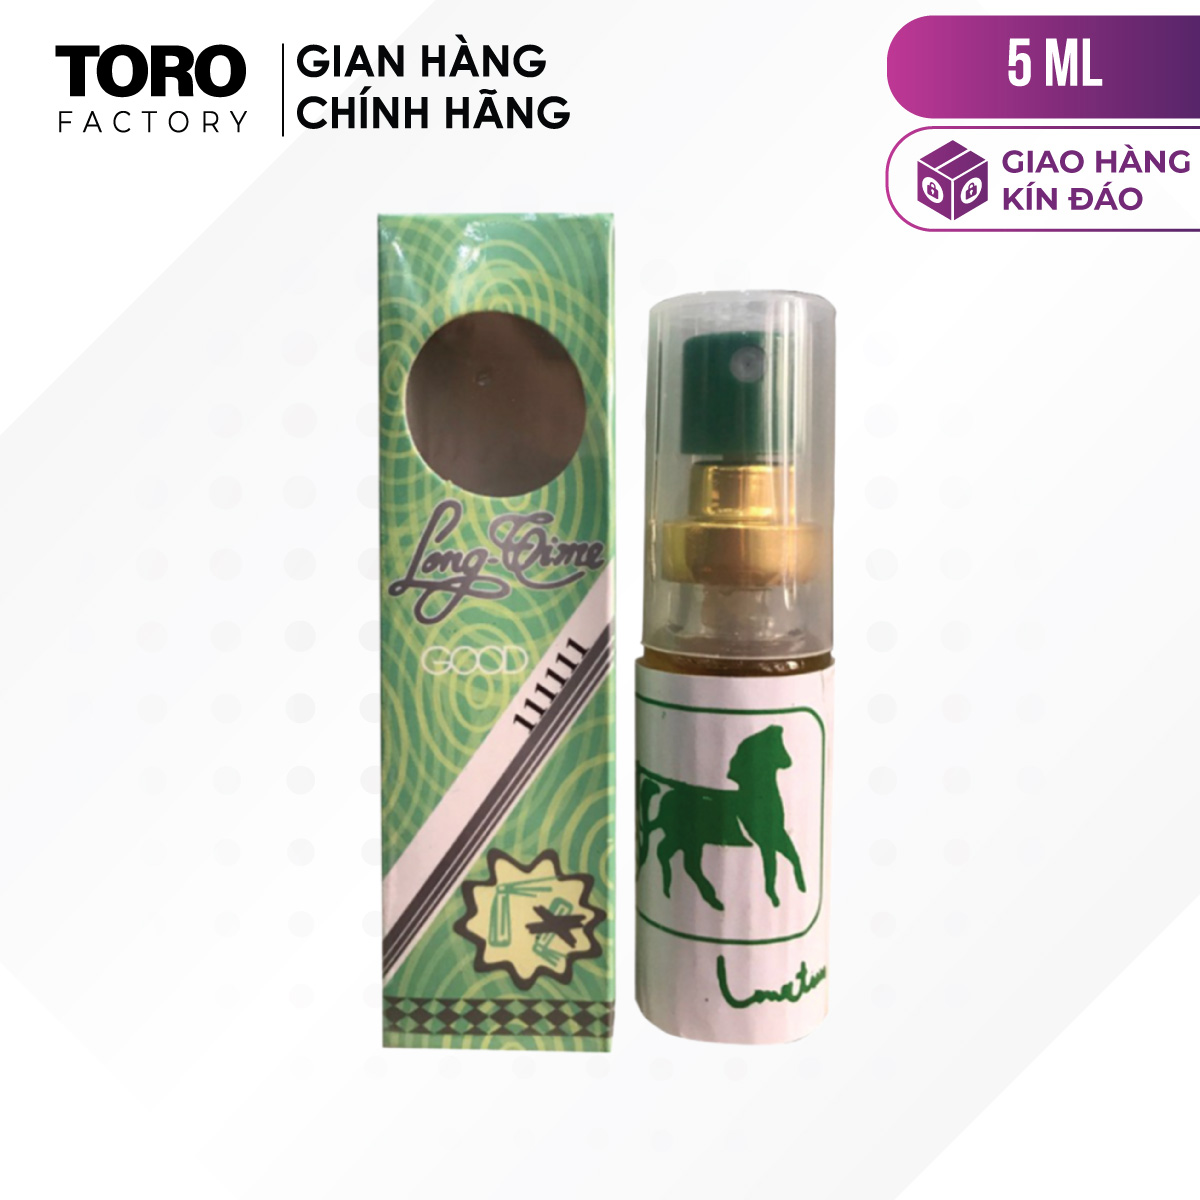 Chai 5ml Chai xịt Thái Lan Longtime - Kéo dài thời gian TORO FACTORY